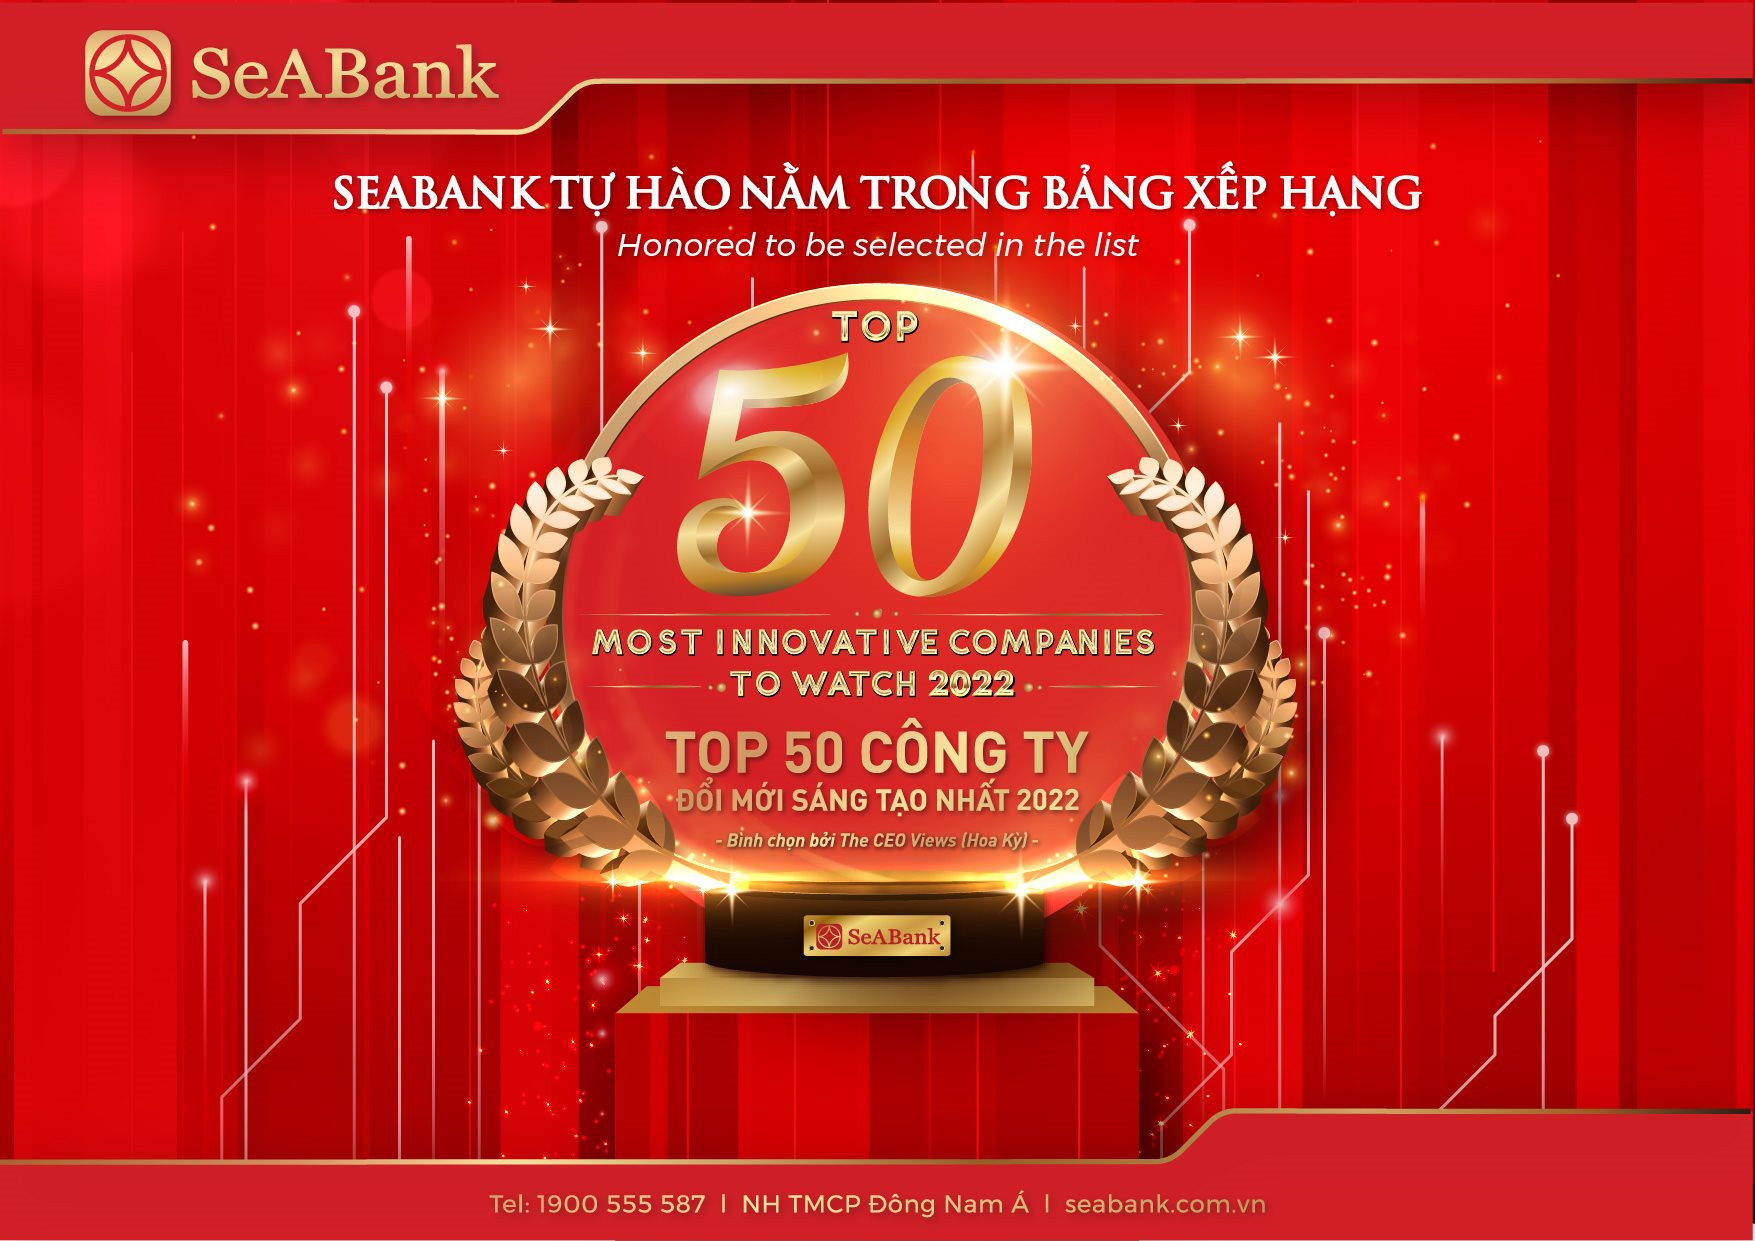 seabank-top-50-cong-ty-doi-moi-sang-tao.jpg